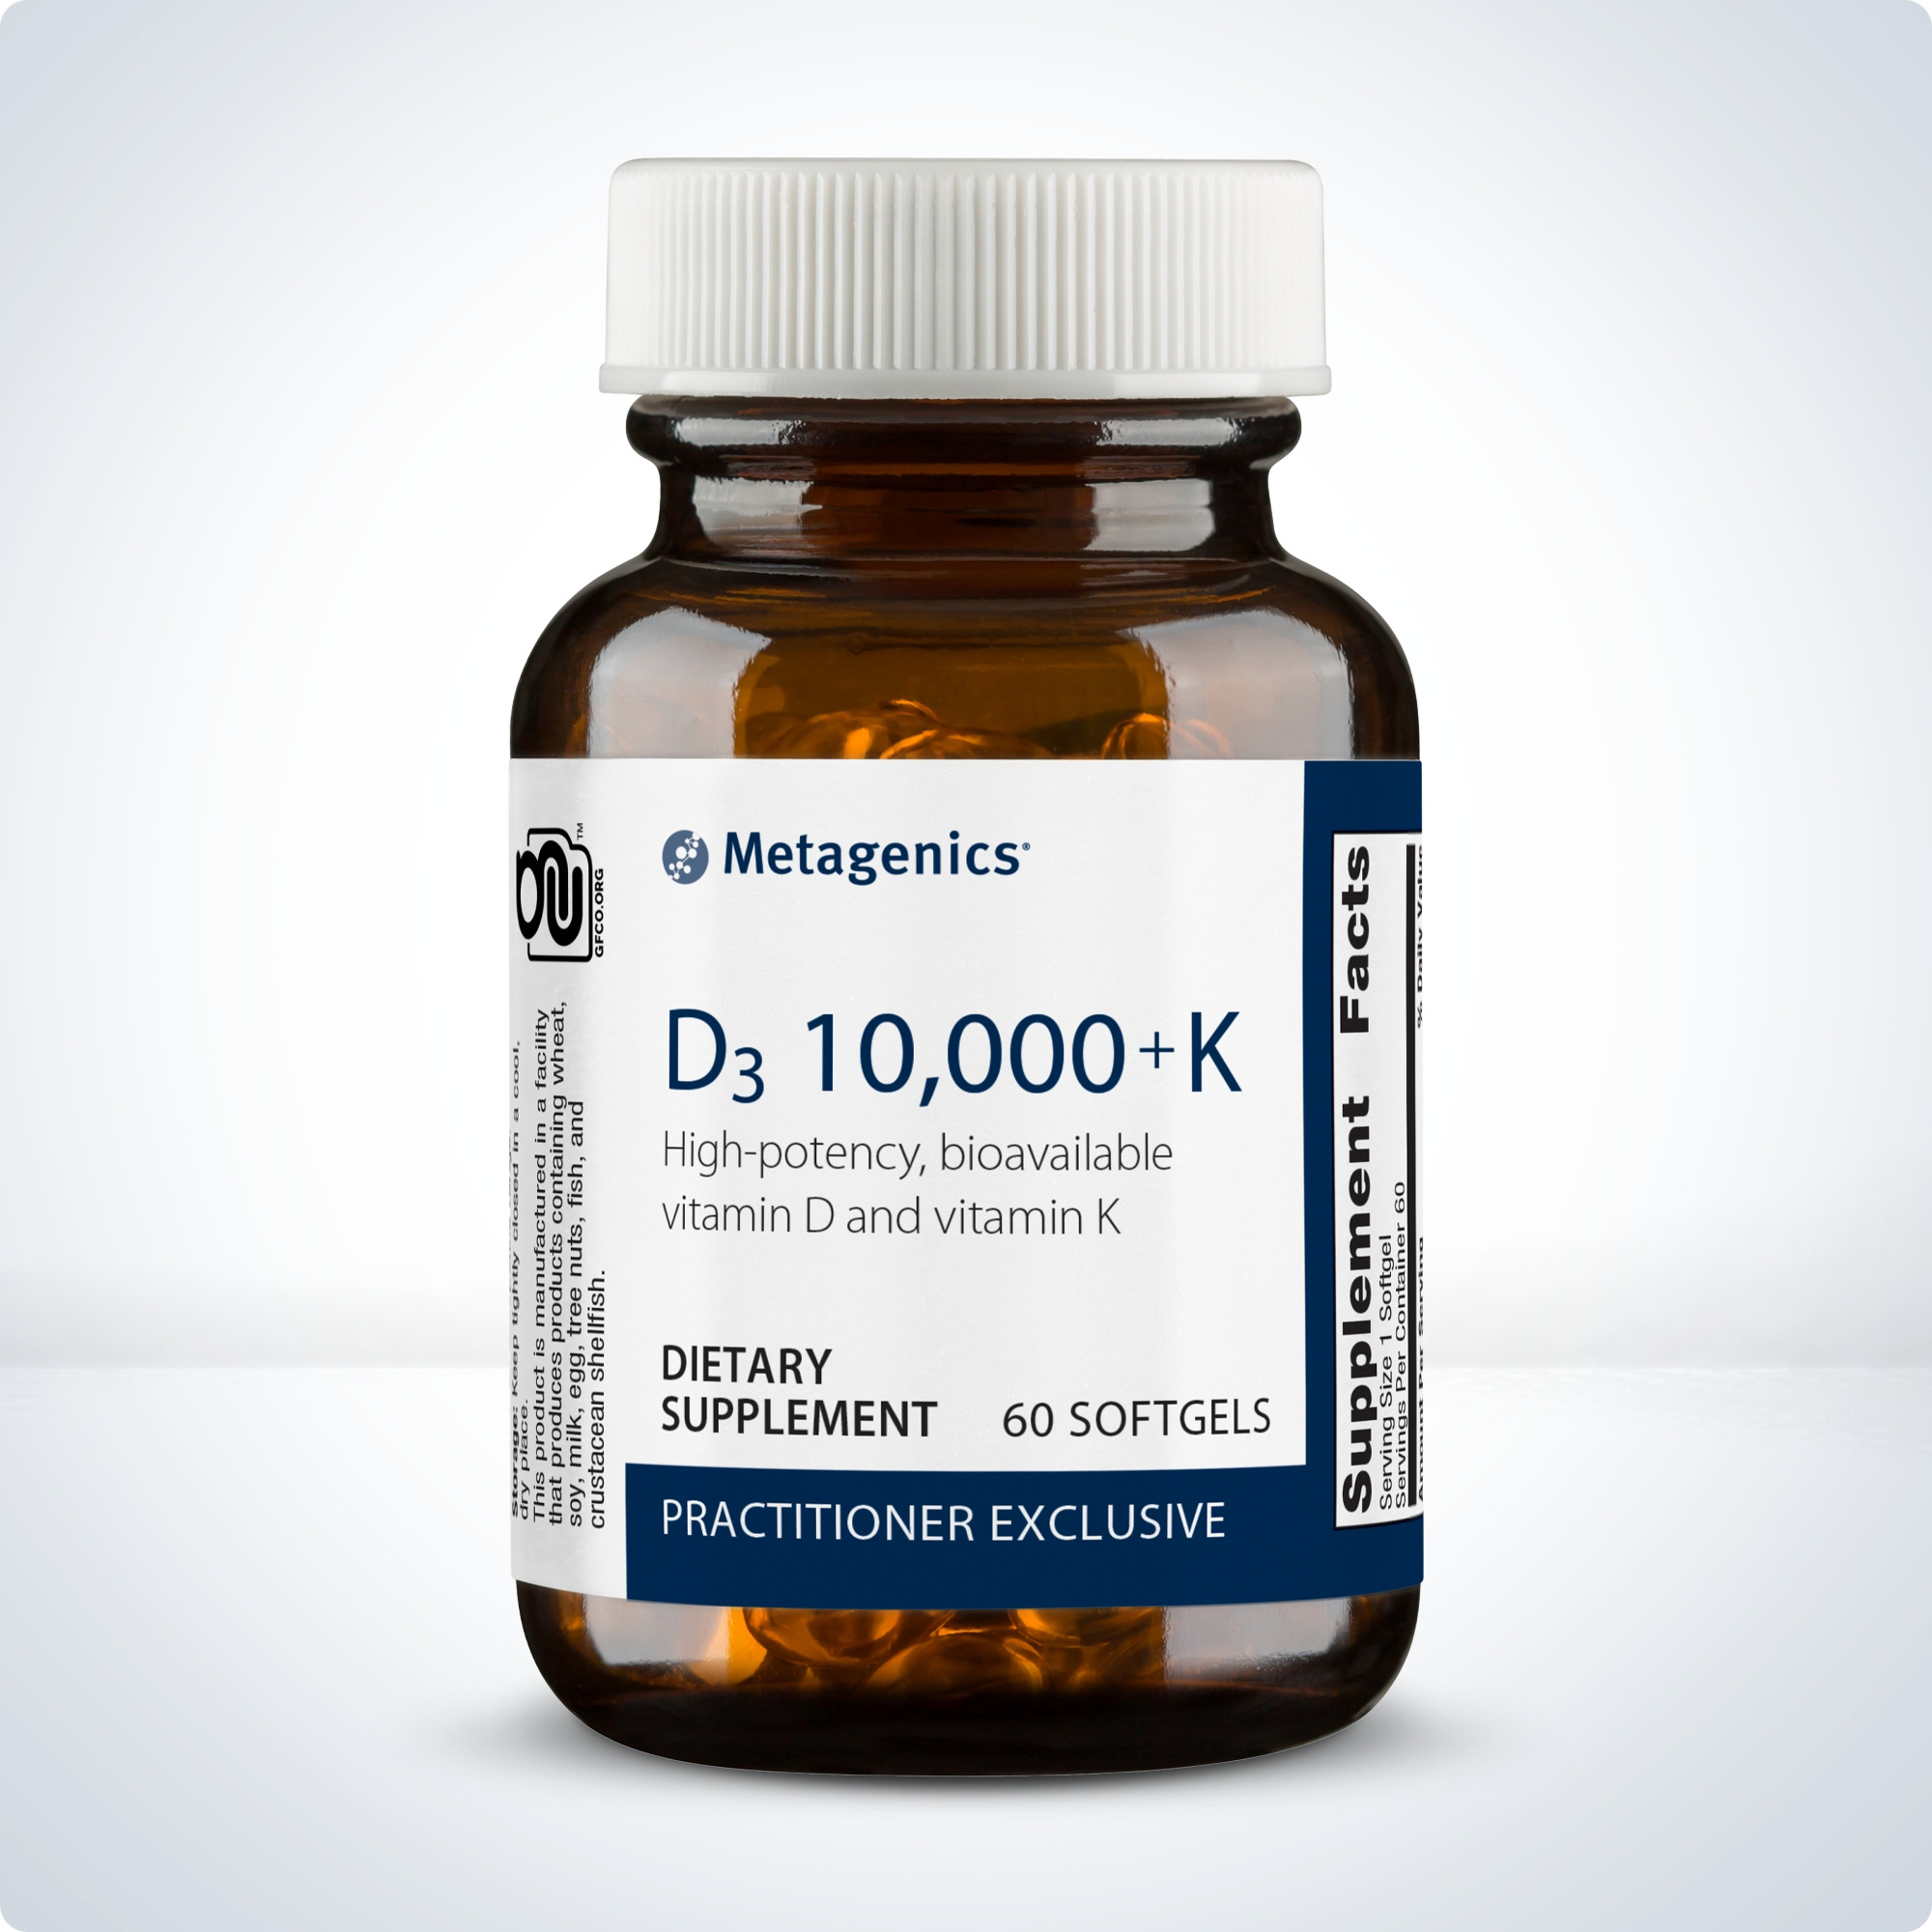 Vitamin D3 10,000 + K 